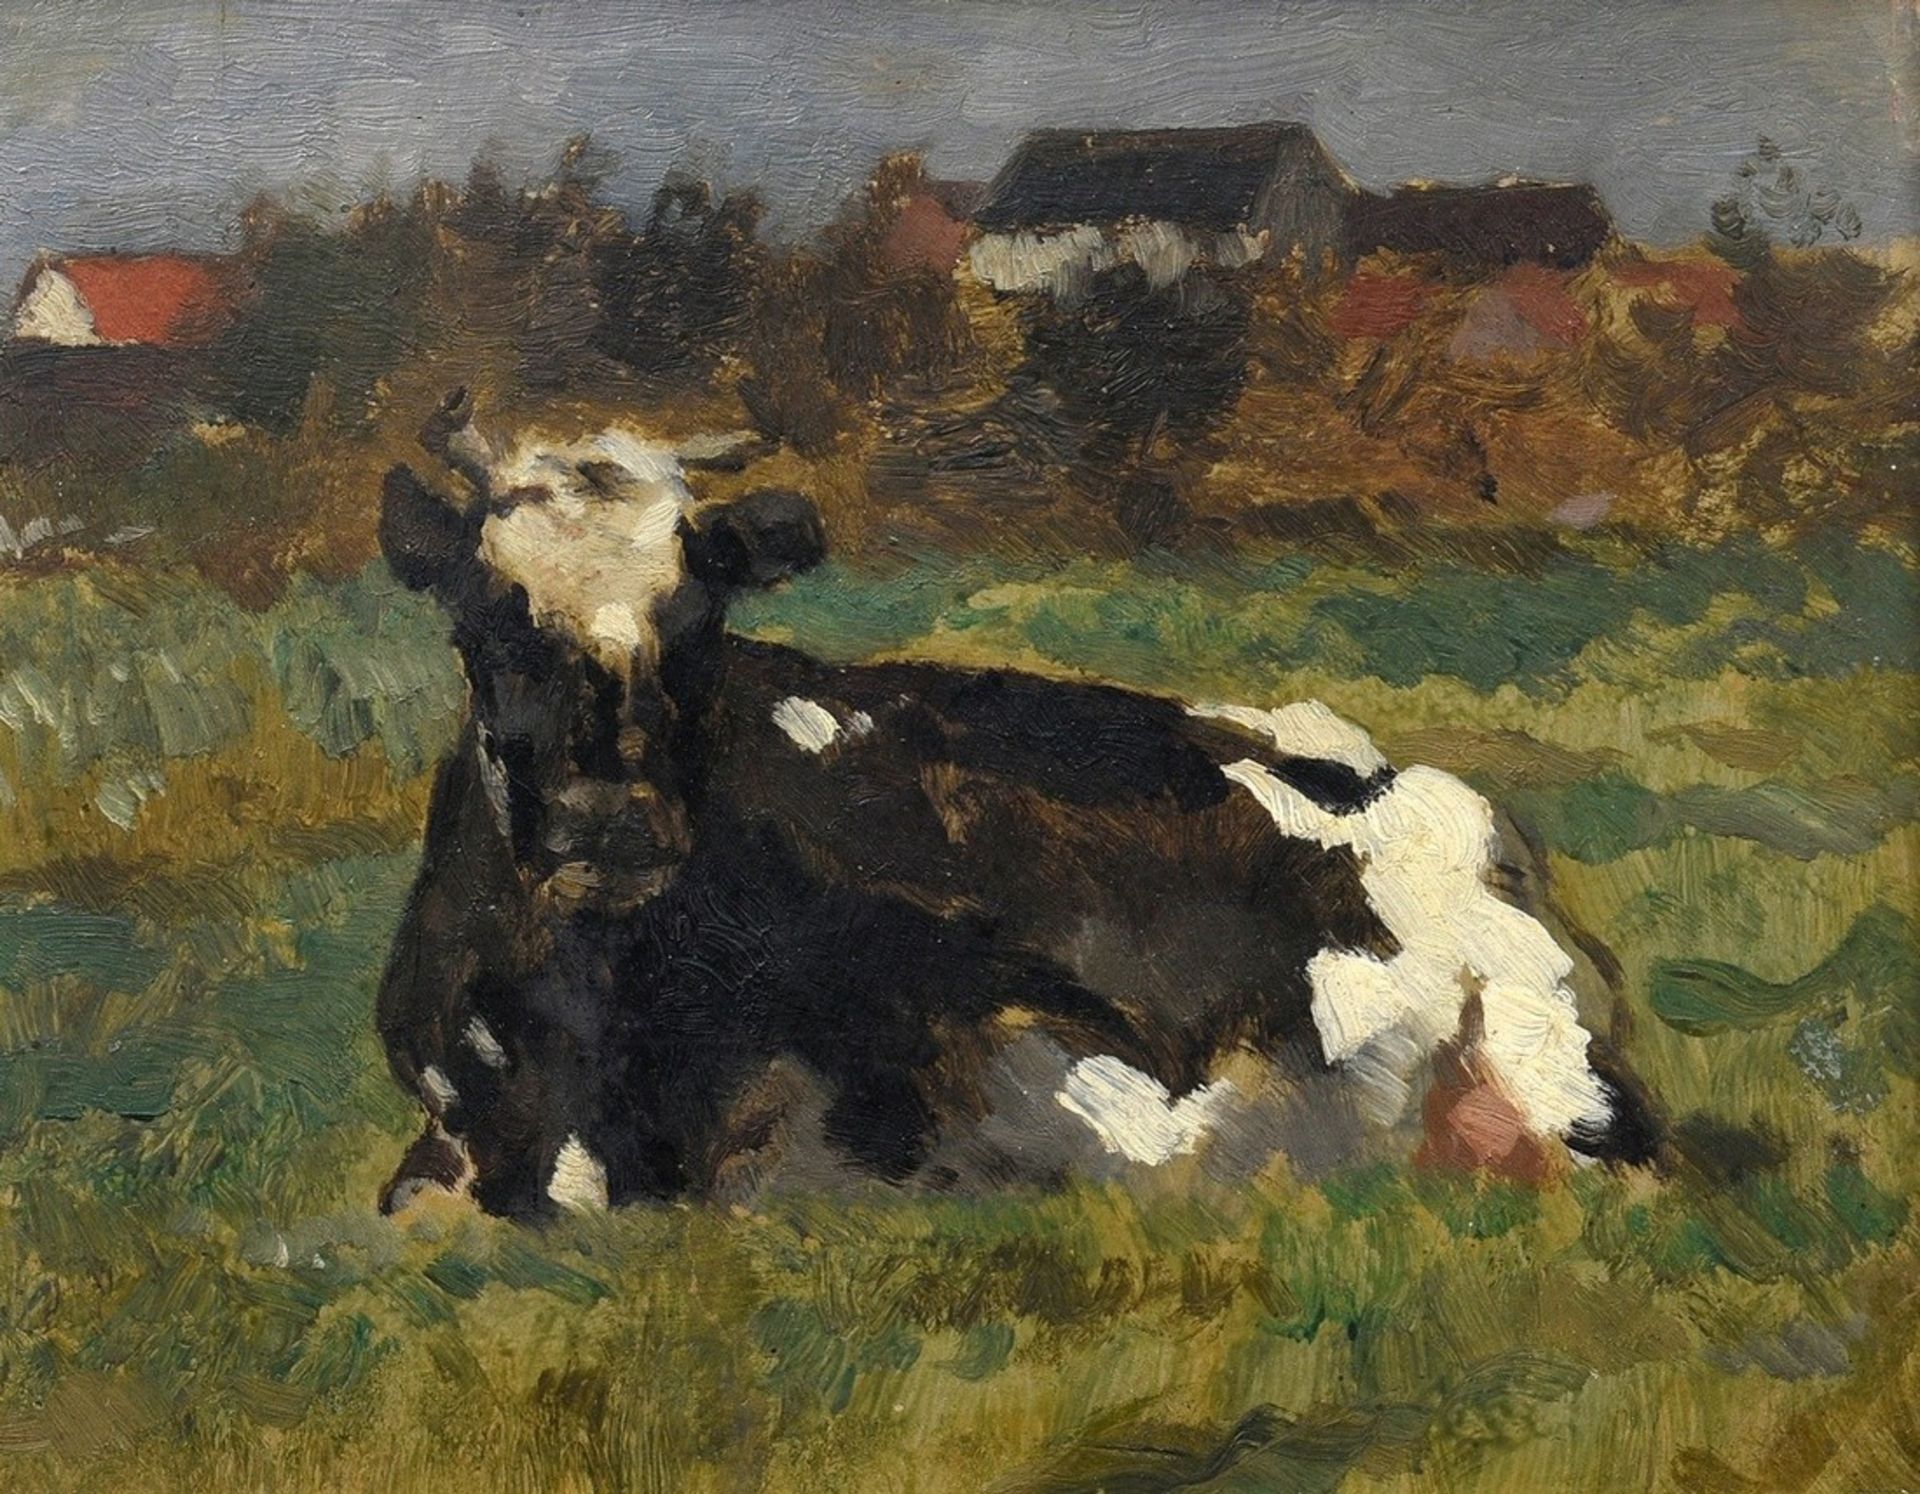 Unknown artist c. 1900 "Lying cow", oil/wood, 16.8x20.8cm (w.f. 31x27cm)